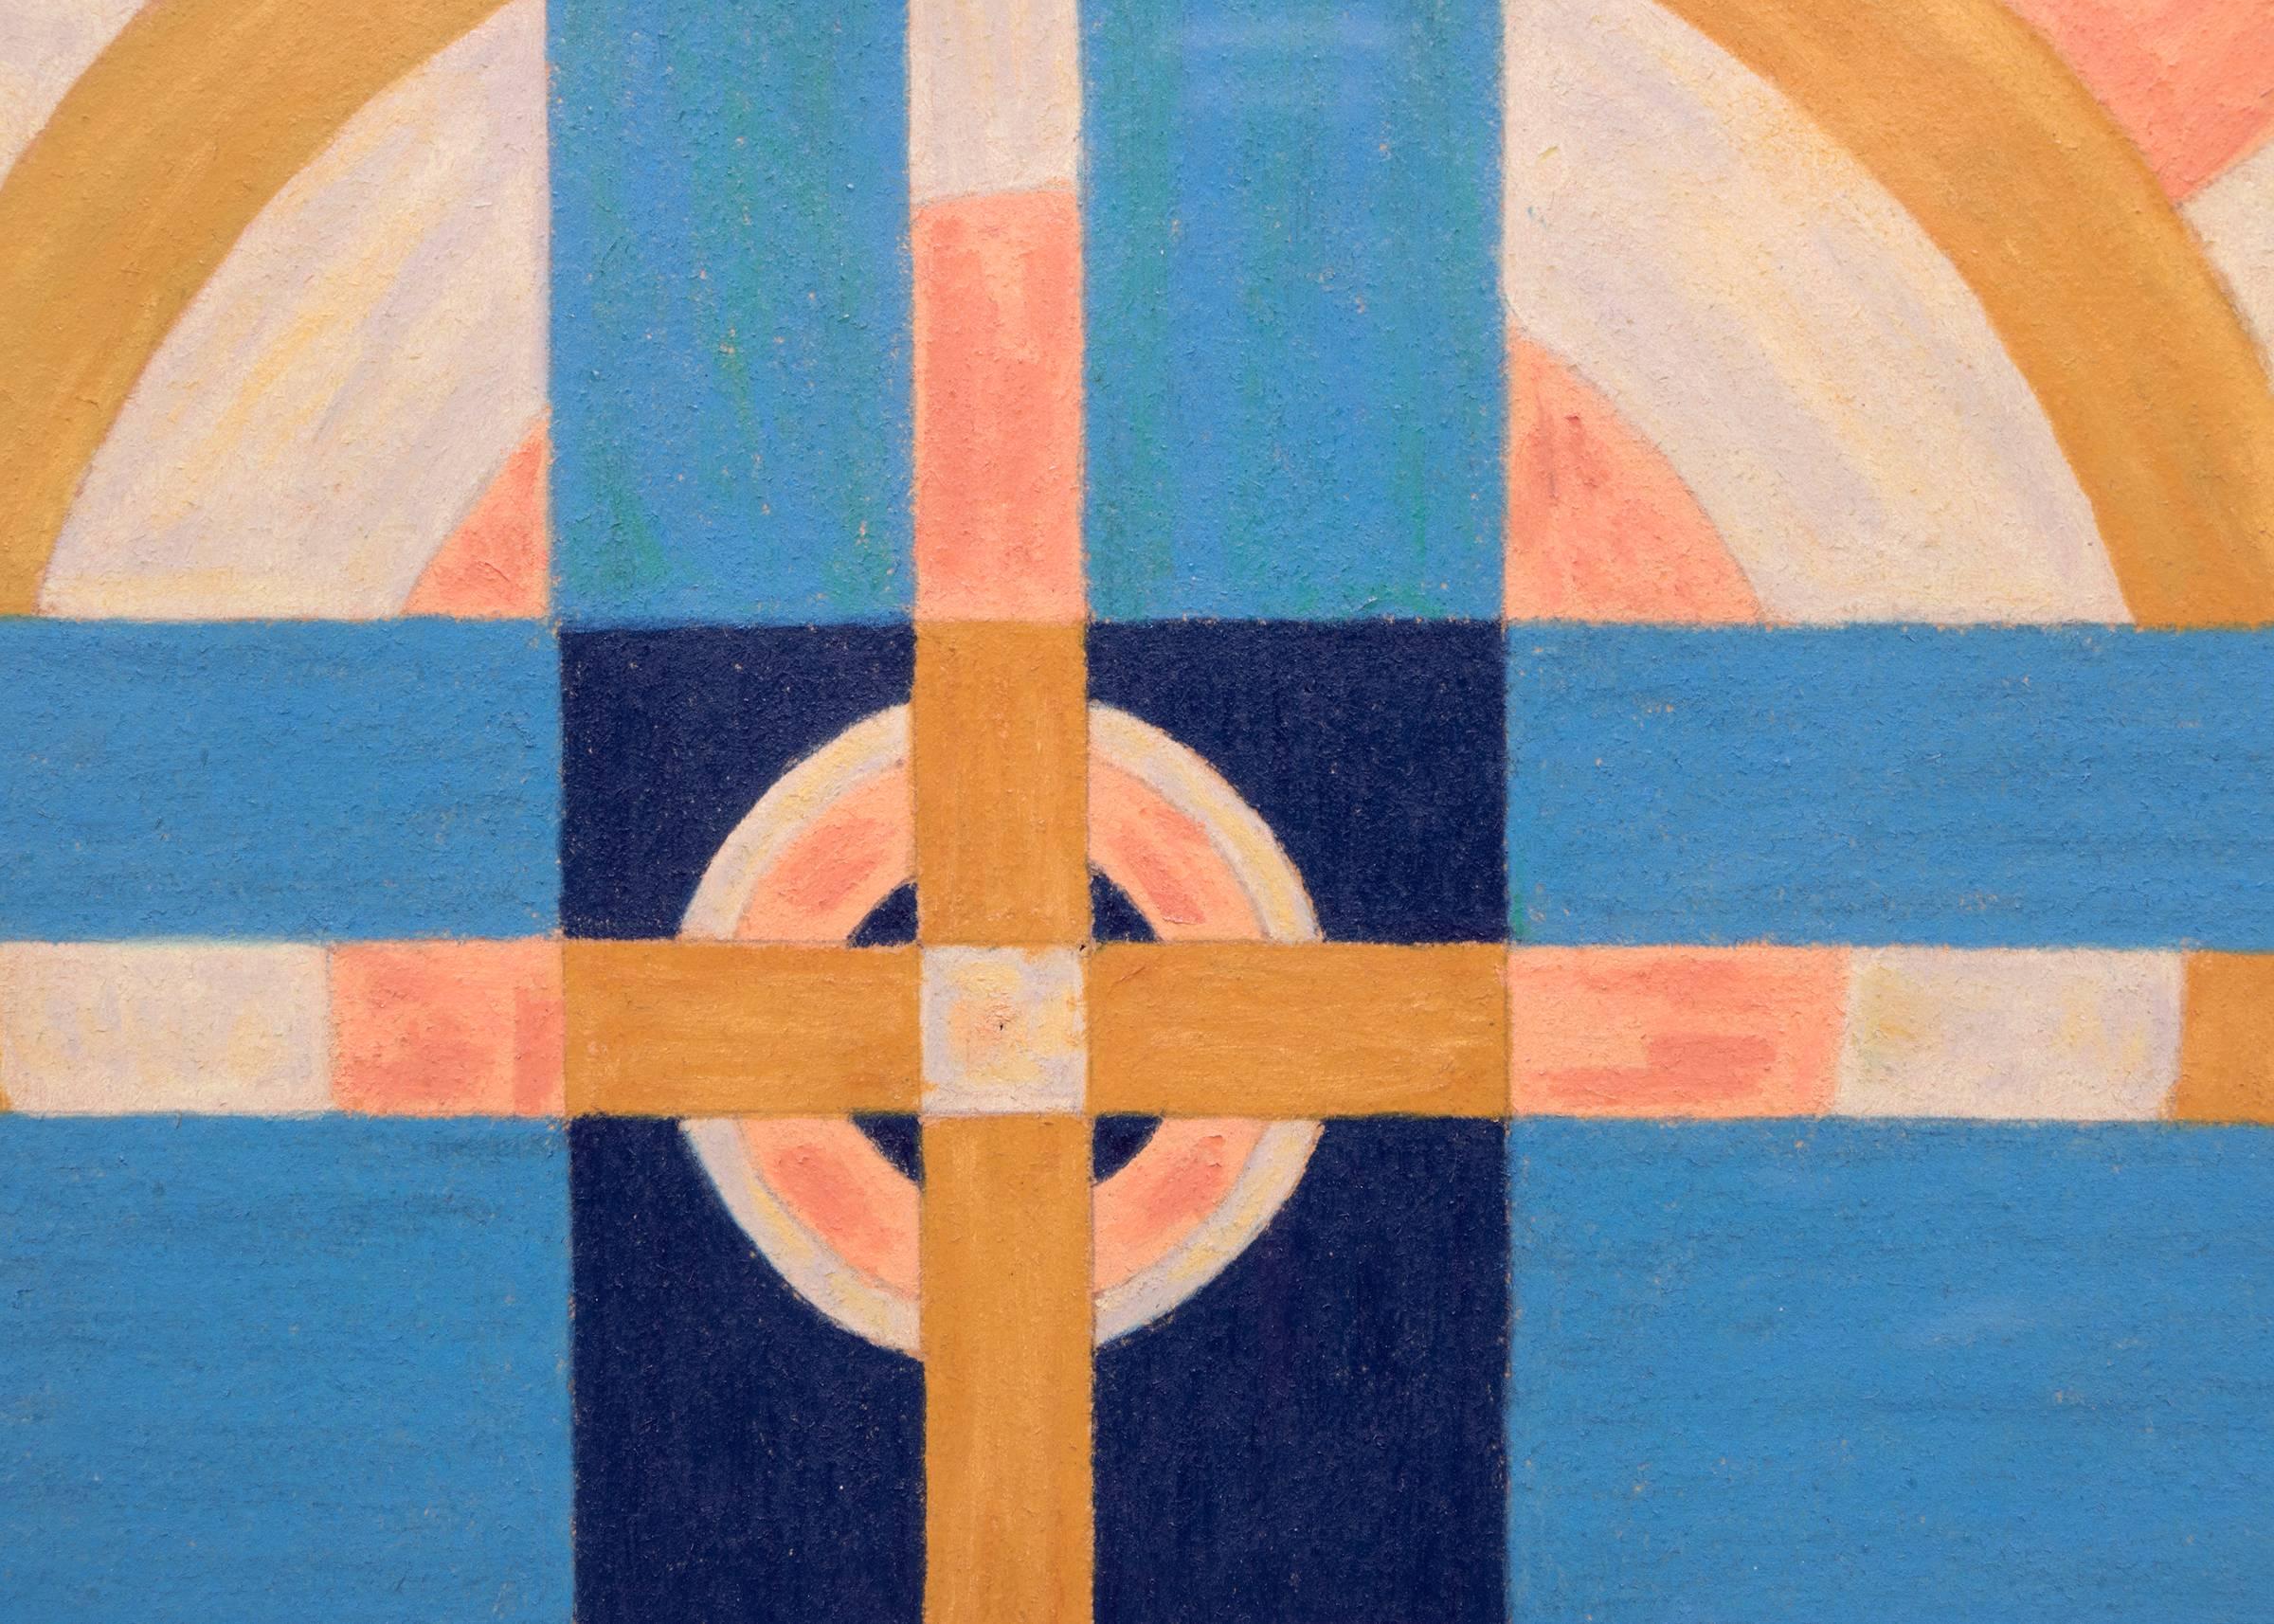 Originales transzendentalistisches Gemälde des frühen Künstlers Emil Bisttram (1895-1976) aus New Mexico von 1939 mit einem stilisierten Kreuzmotiv in den Farben Rosa, Blau, Gold und Weiß. Präsentiert in einem benutzerdefinierten Rahmen, sind die